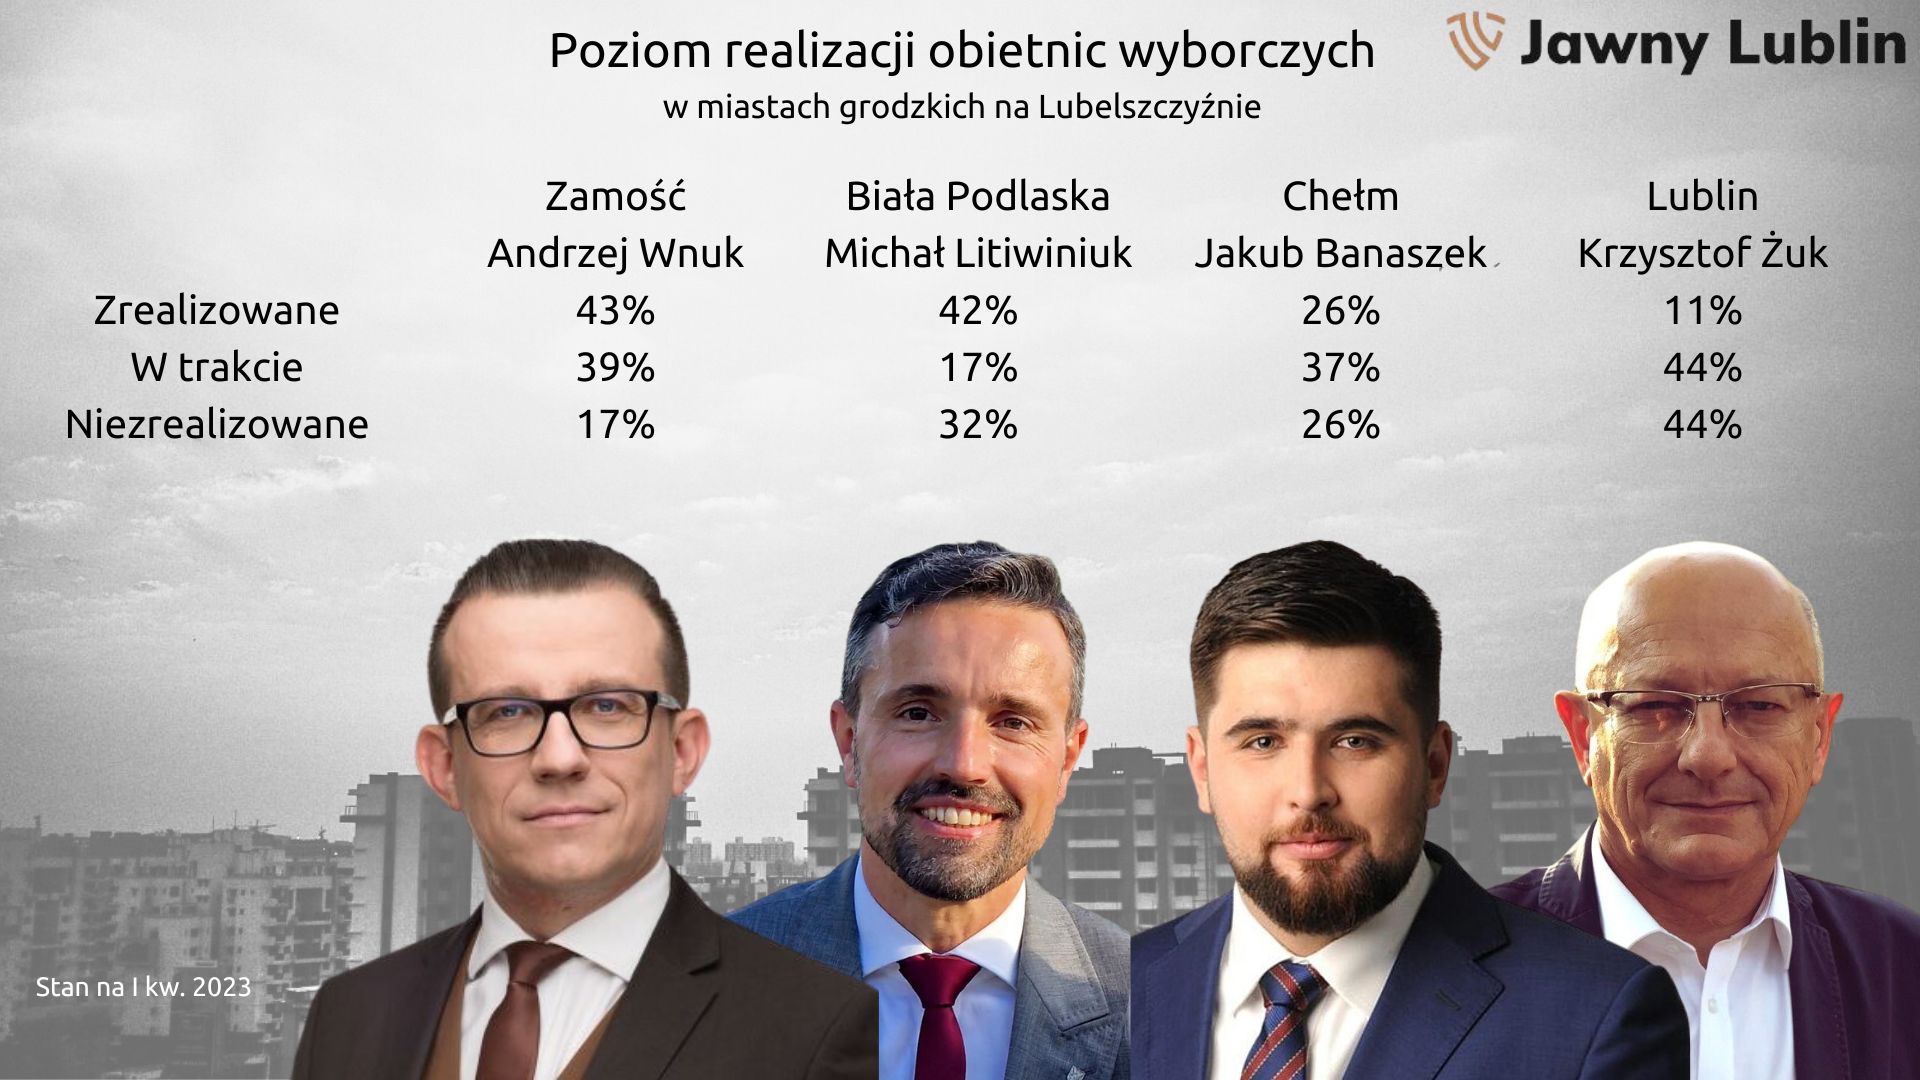 podsumowanie obietnic prezydentow 23 obietnice złożył przed wyborami Andrzej Wnuk. Co się udało?